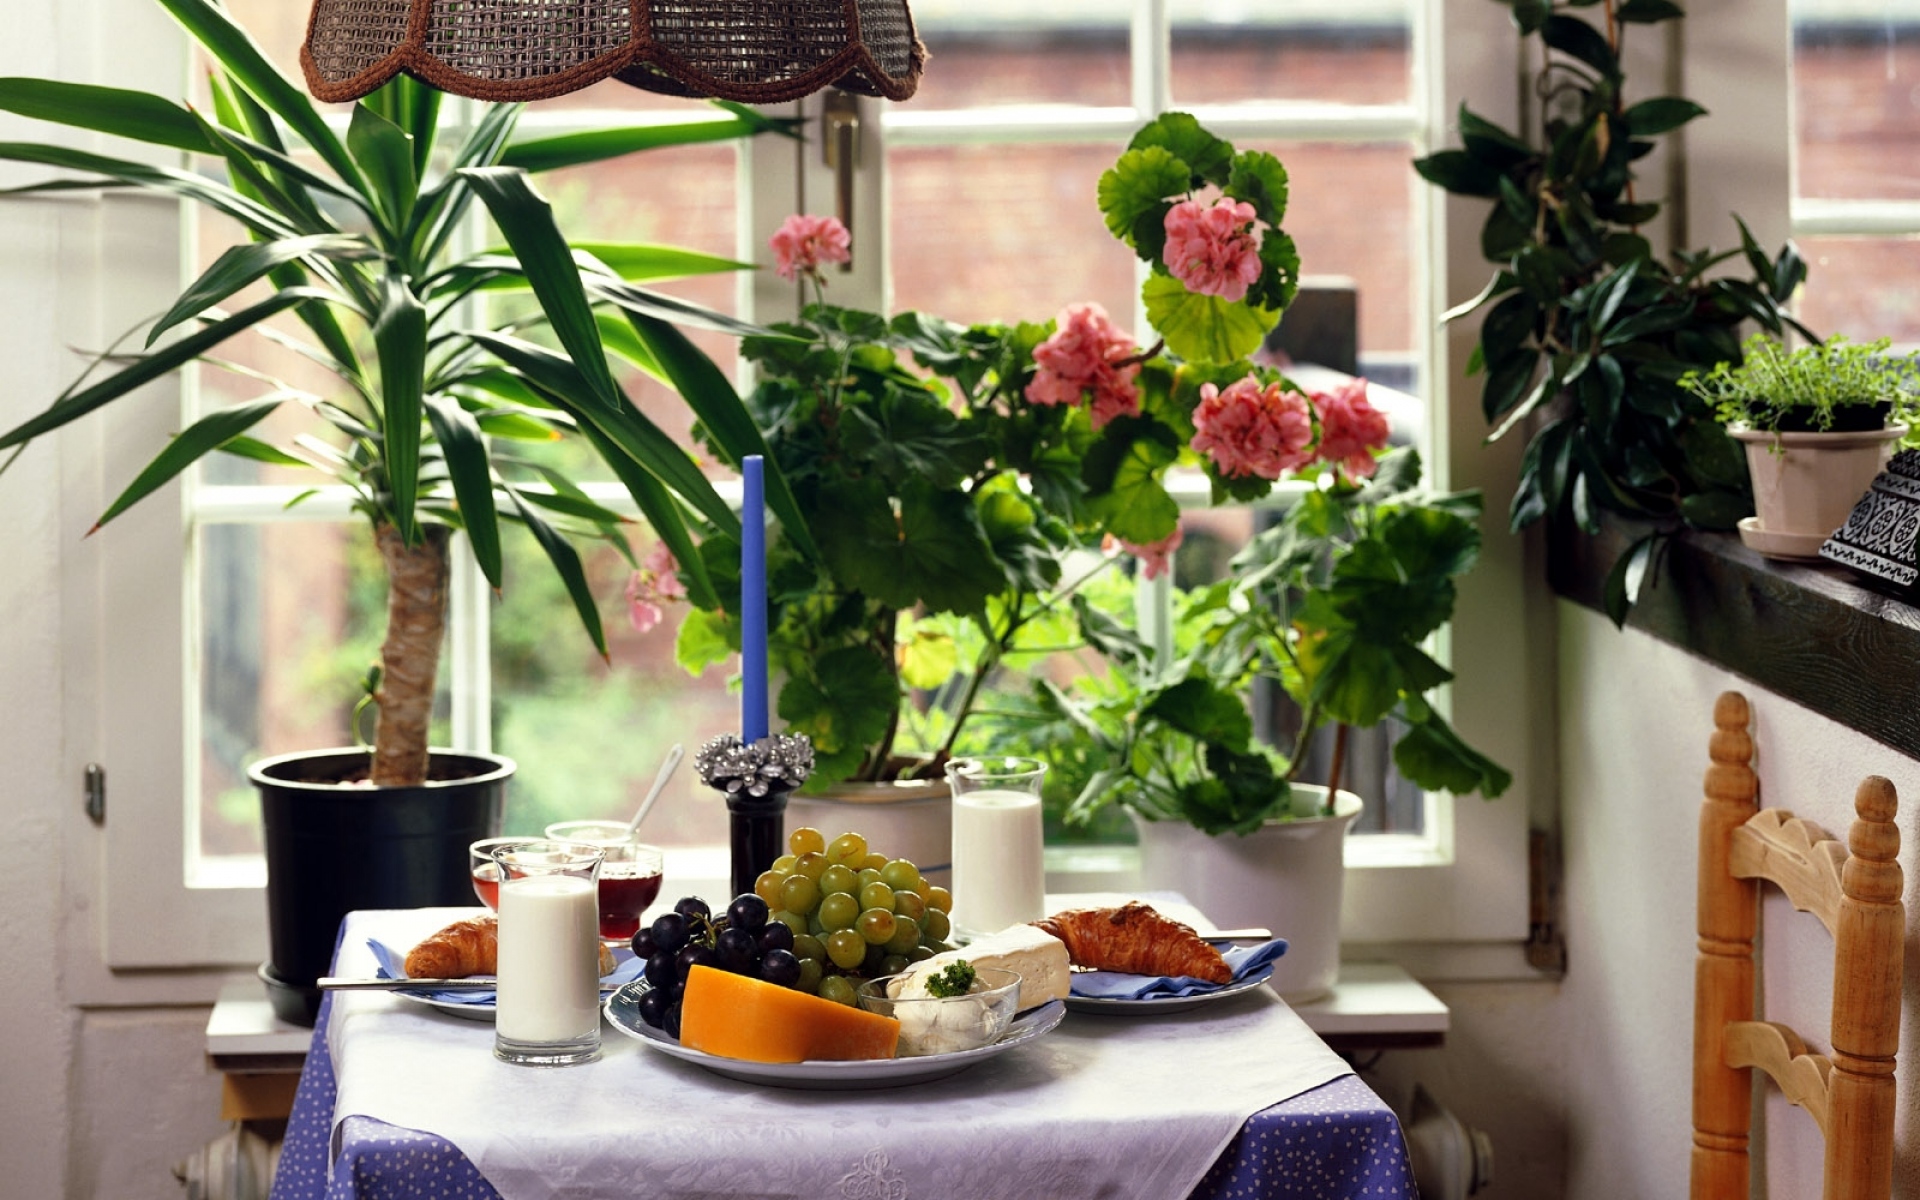 Home romance. Завтрак на балконе. Цветы на кухне уют в доме. Красивый завтрак на балконе. Цветы на кухне уют в доме фото.